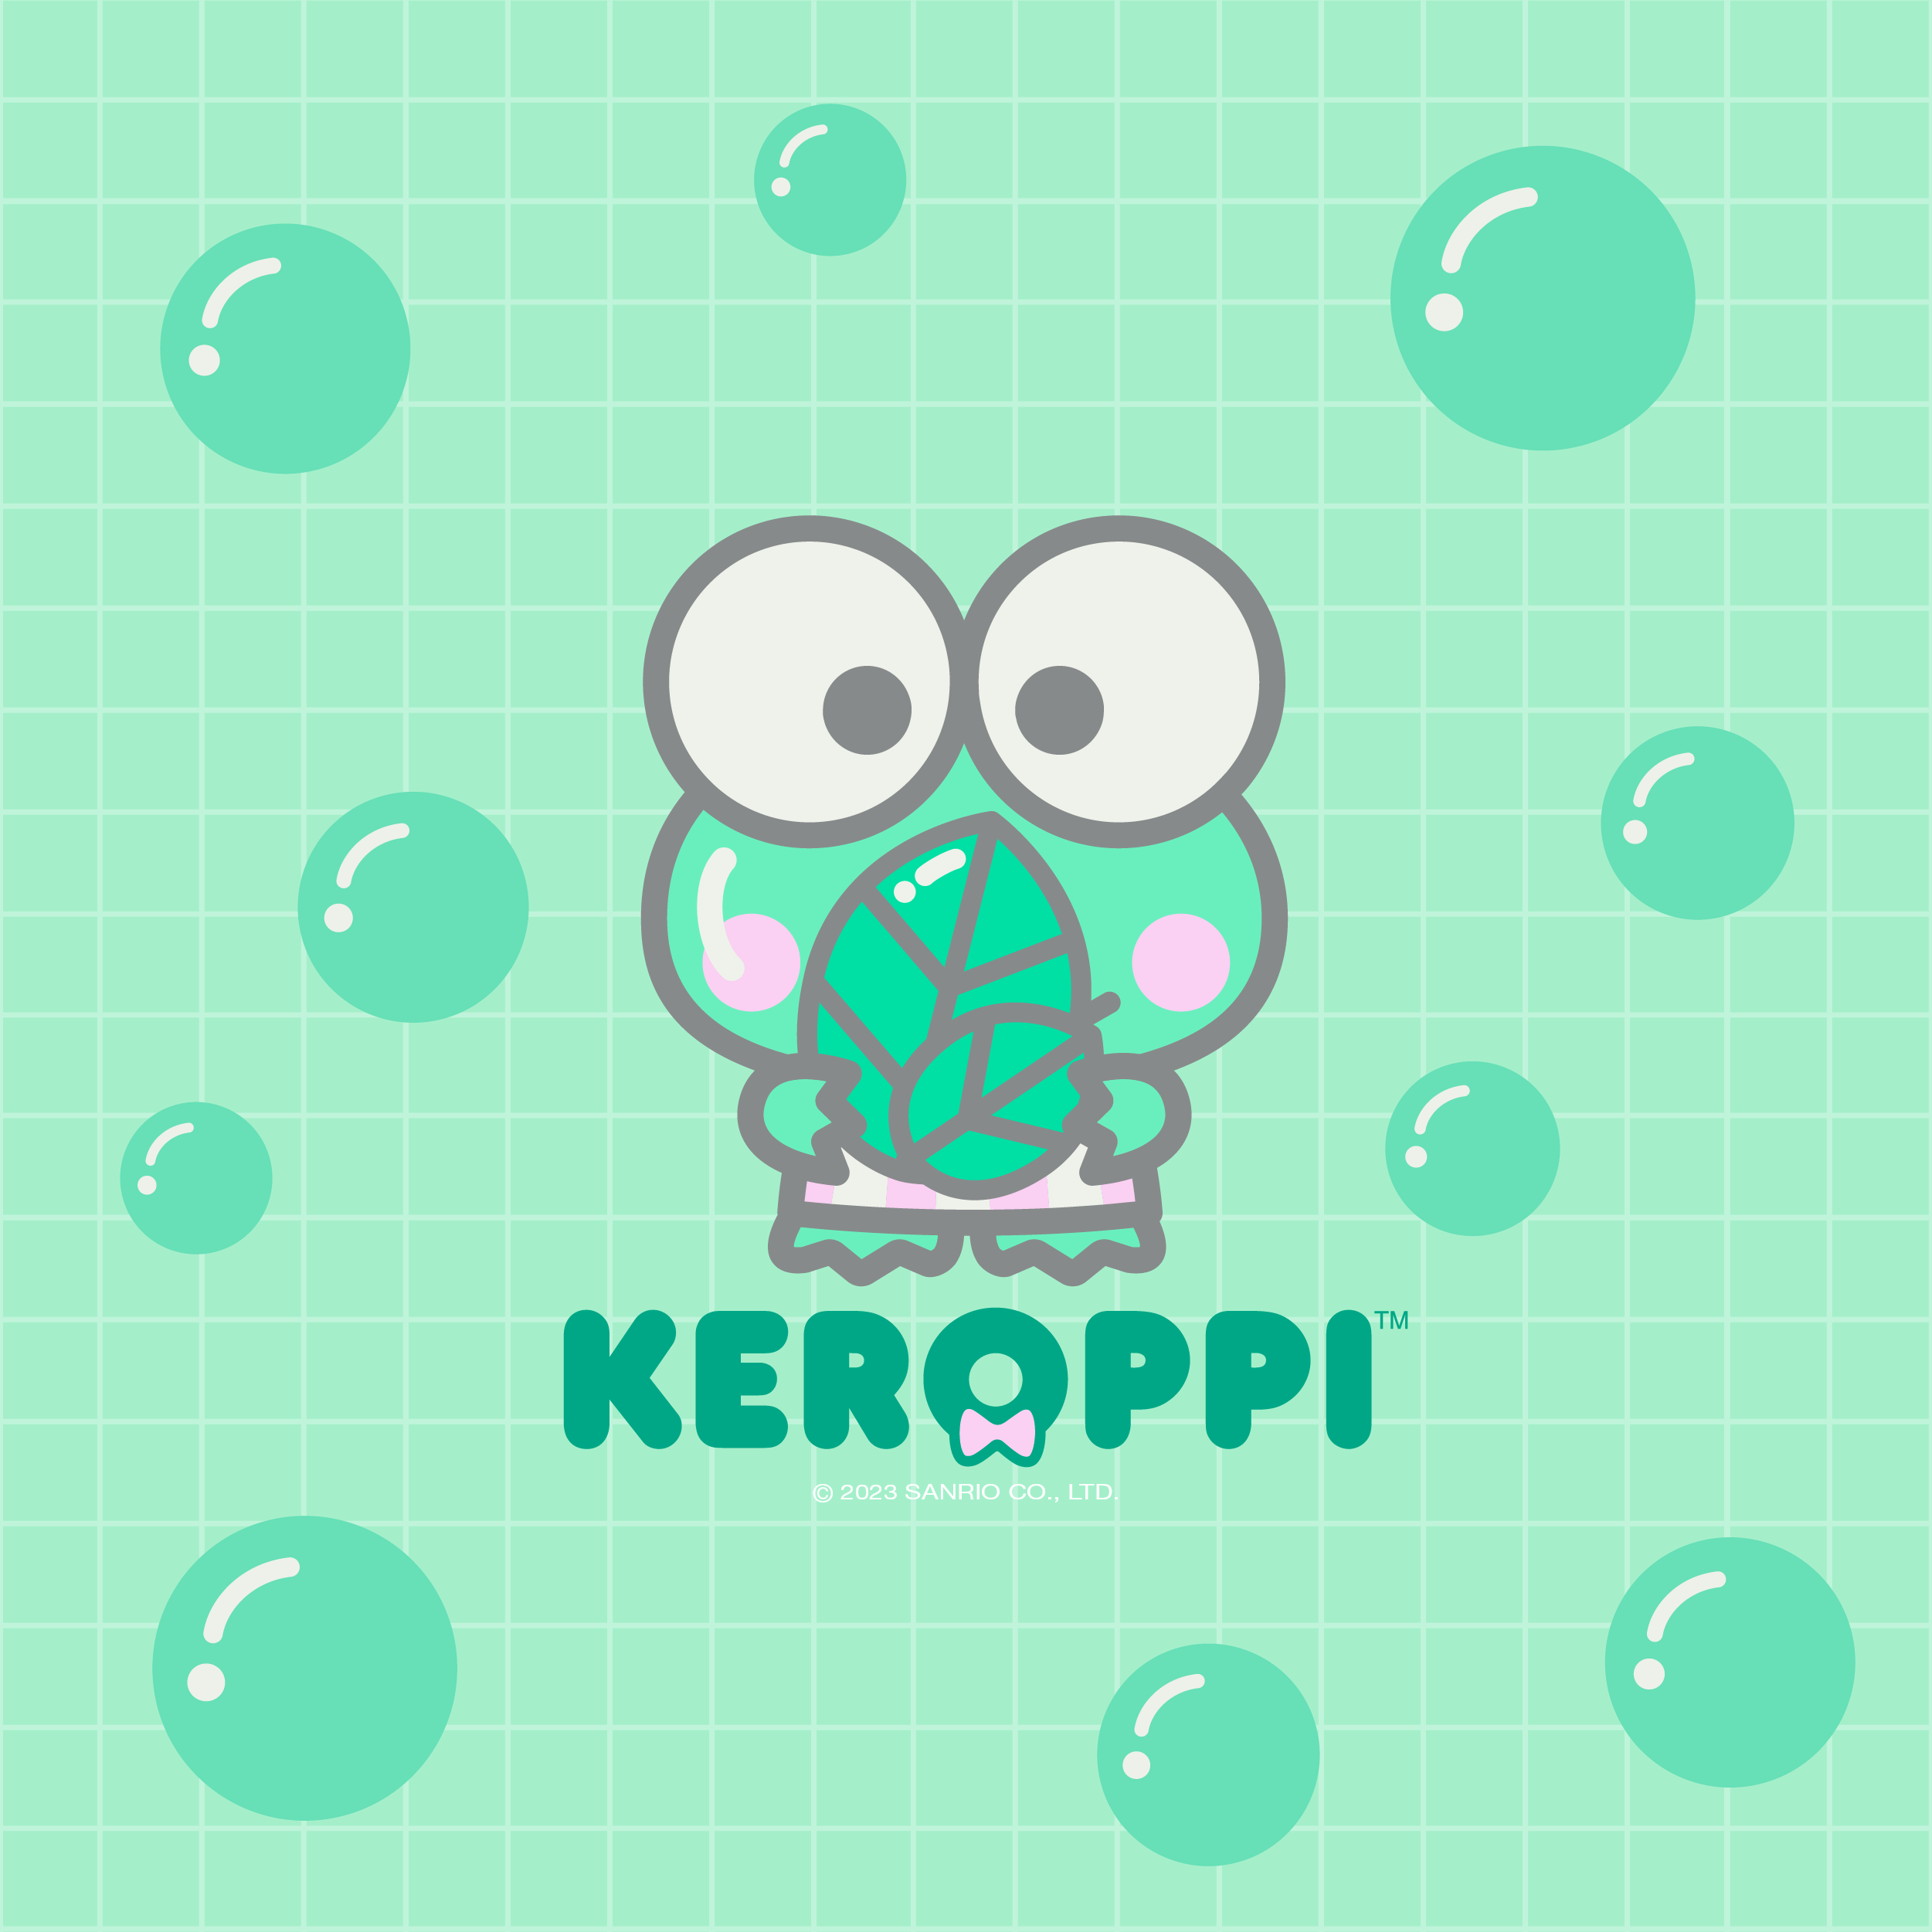 New month, new #Keroppi phone background